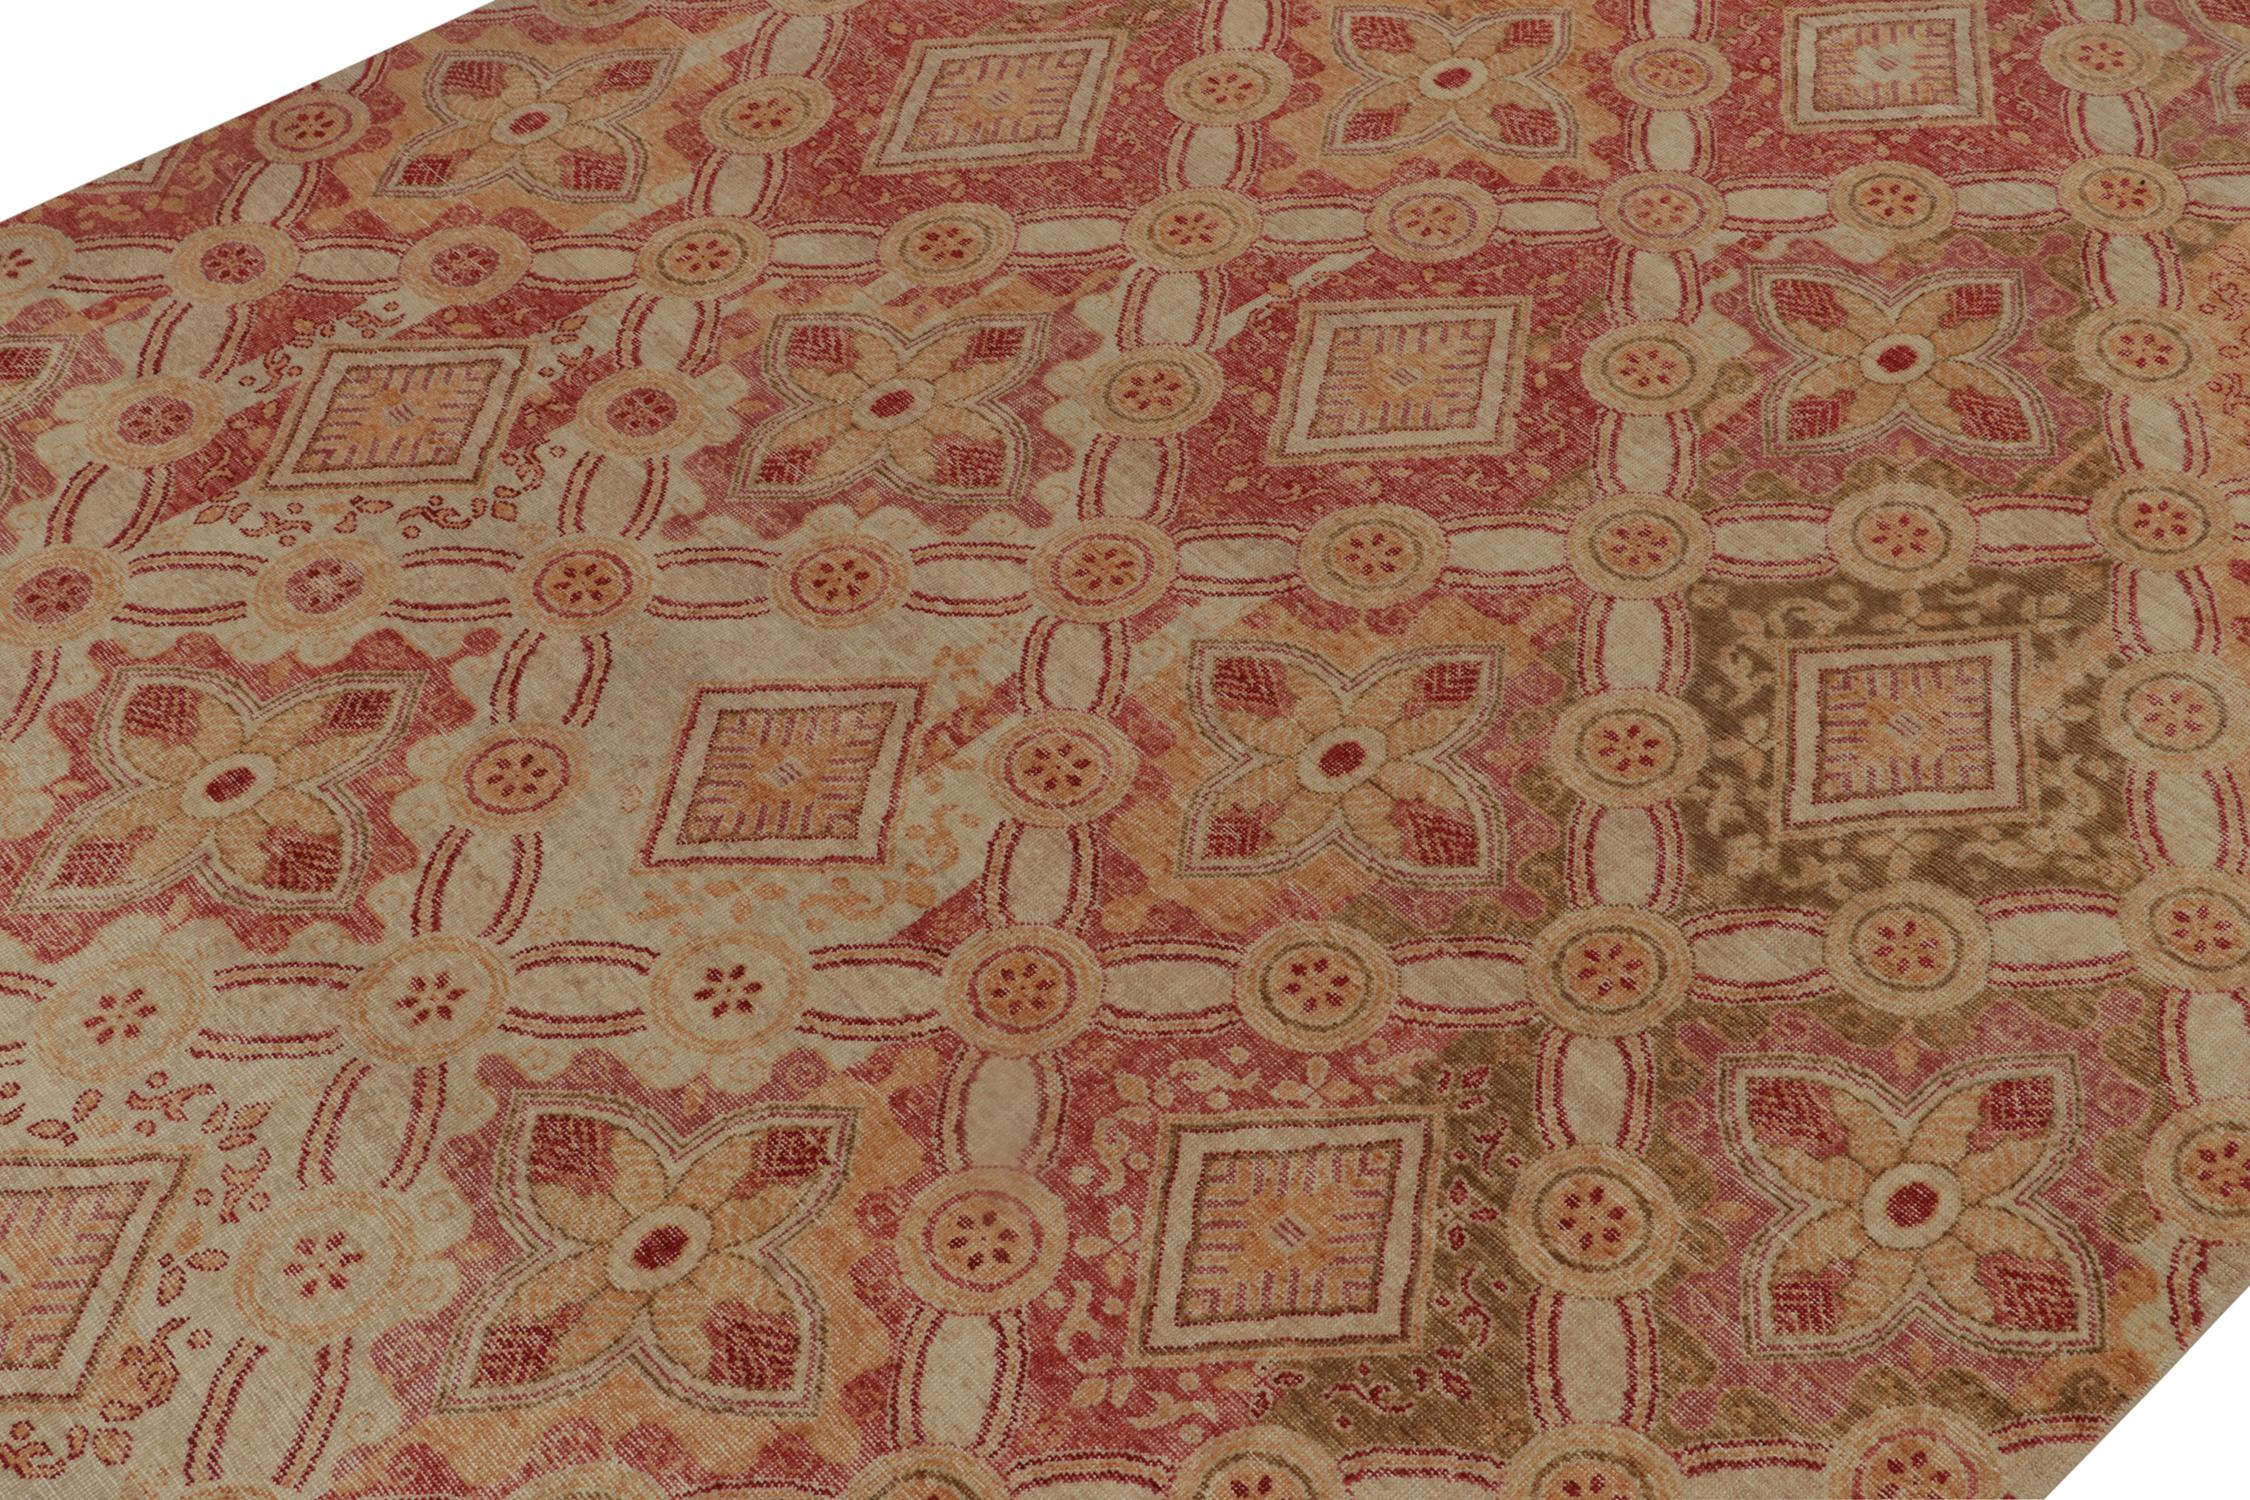 Indien Rug & Kilim's Distressed Style Rug in Red, Gold and Beige-Brown Trellises (tapis de style vieilli en rouge, or et beige) en vente